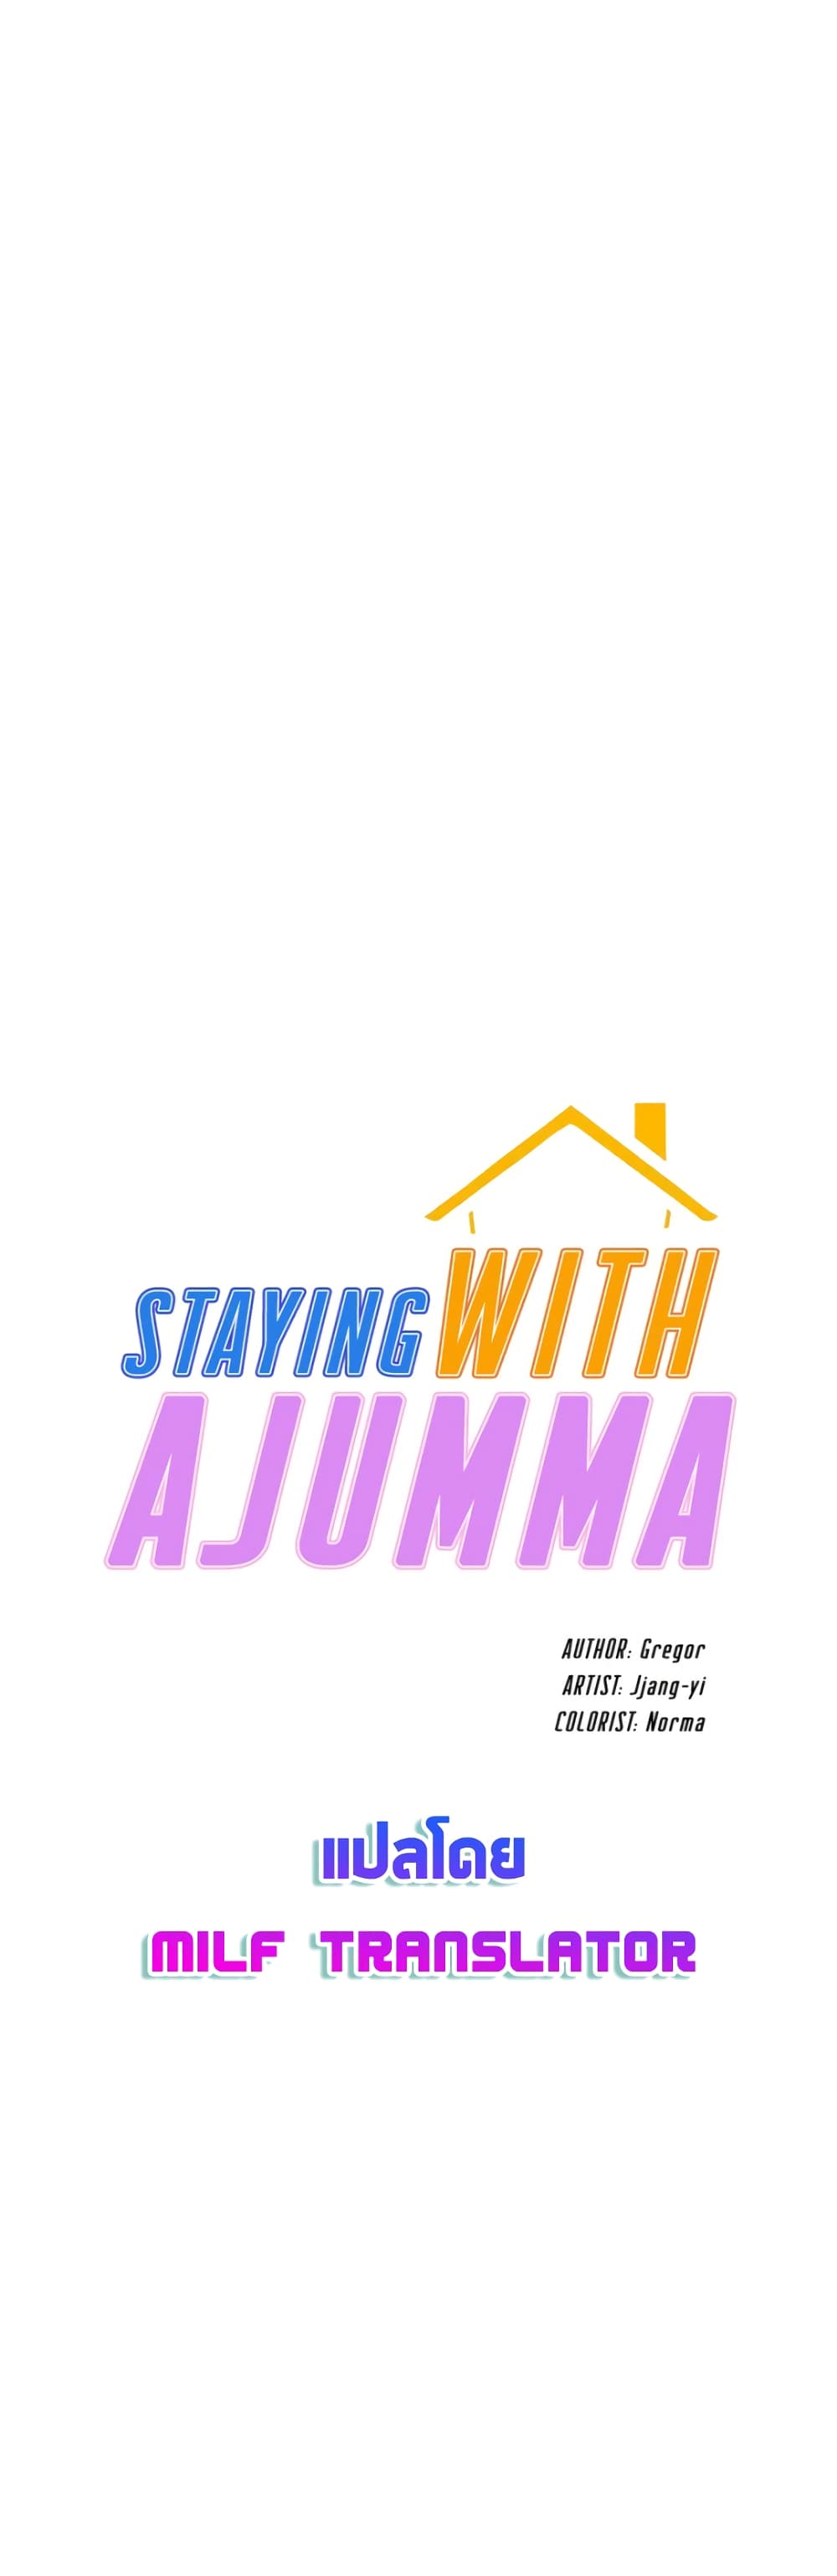 Staying with Ajumma 27-27